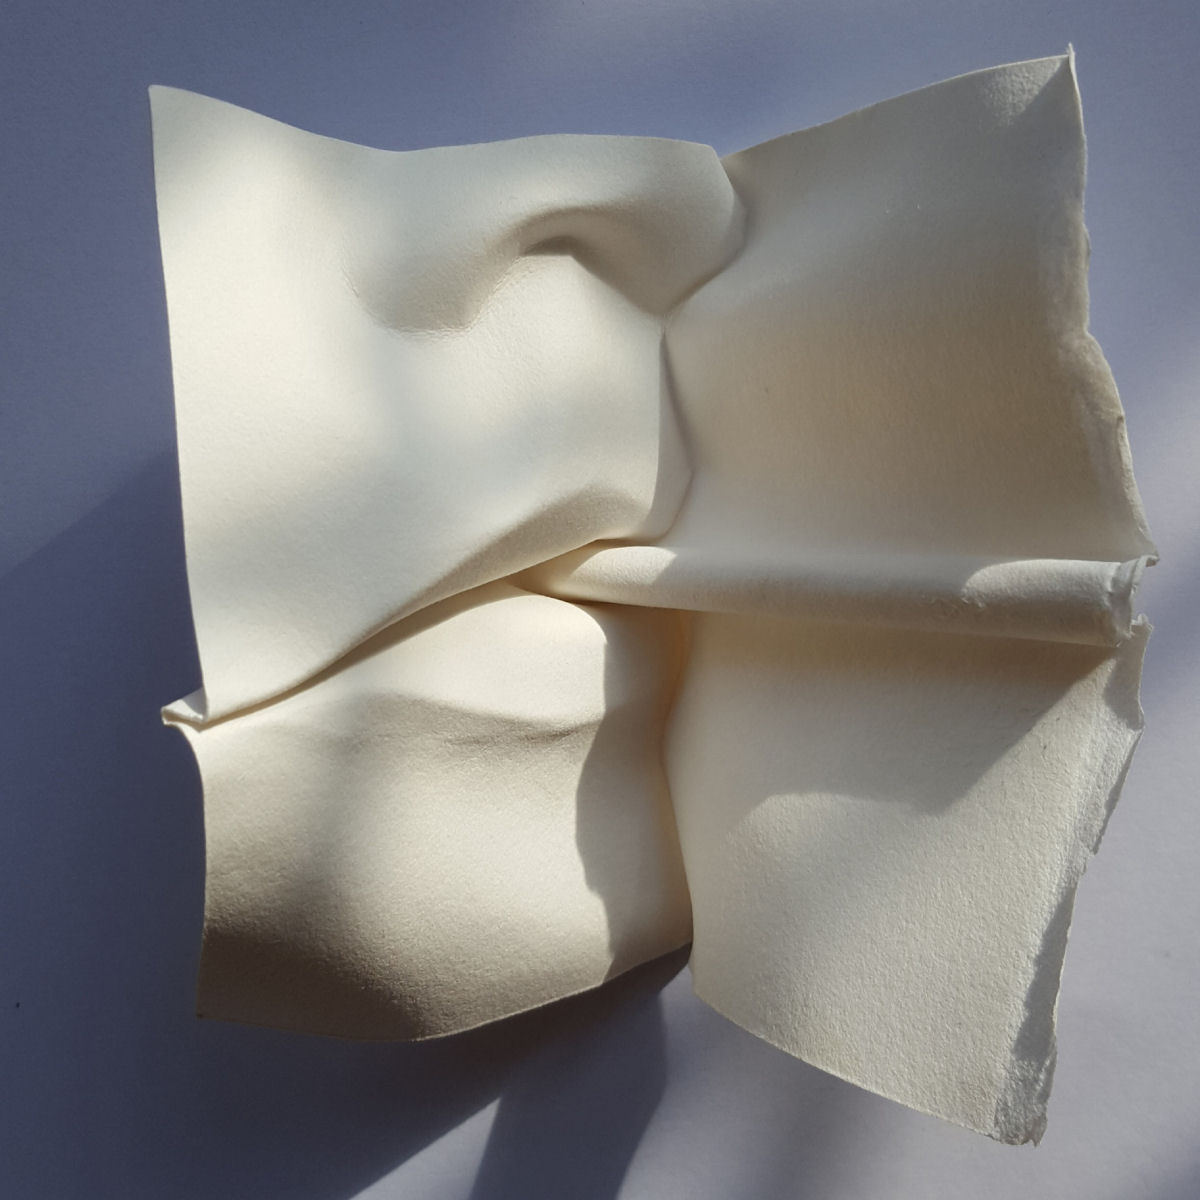 Esculturas sensuais em simples folhas de papel sugerem momentos de intimidade 10